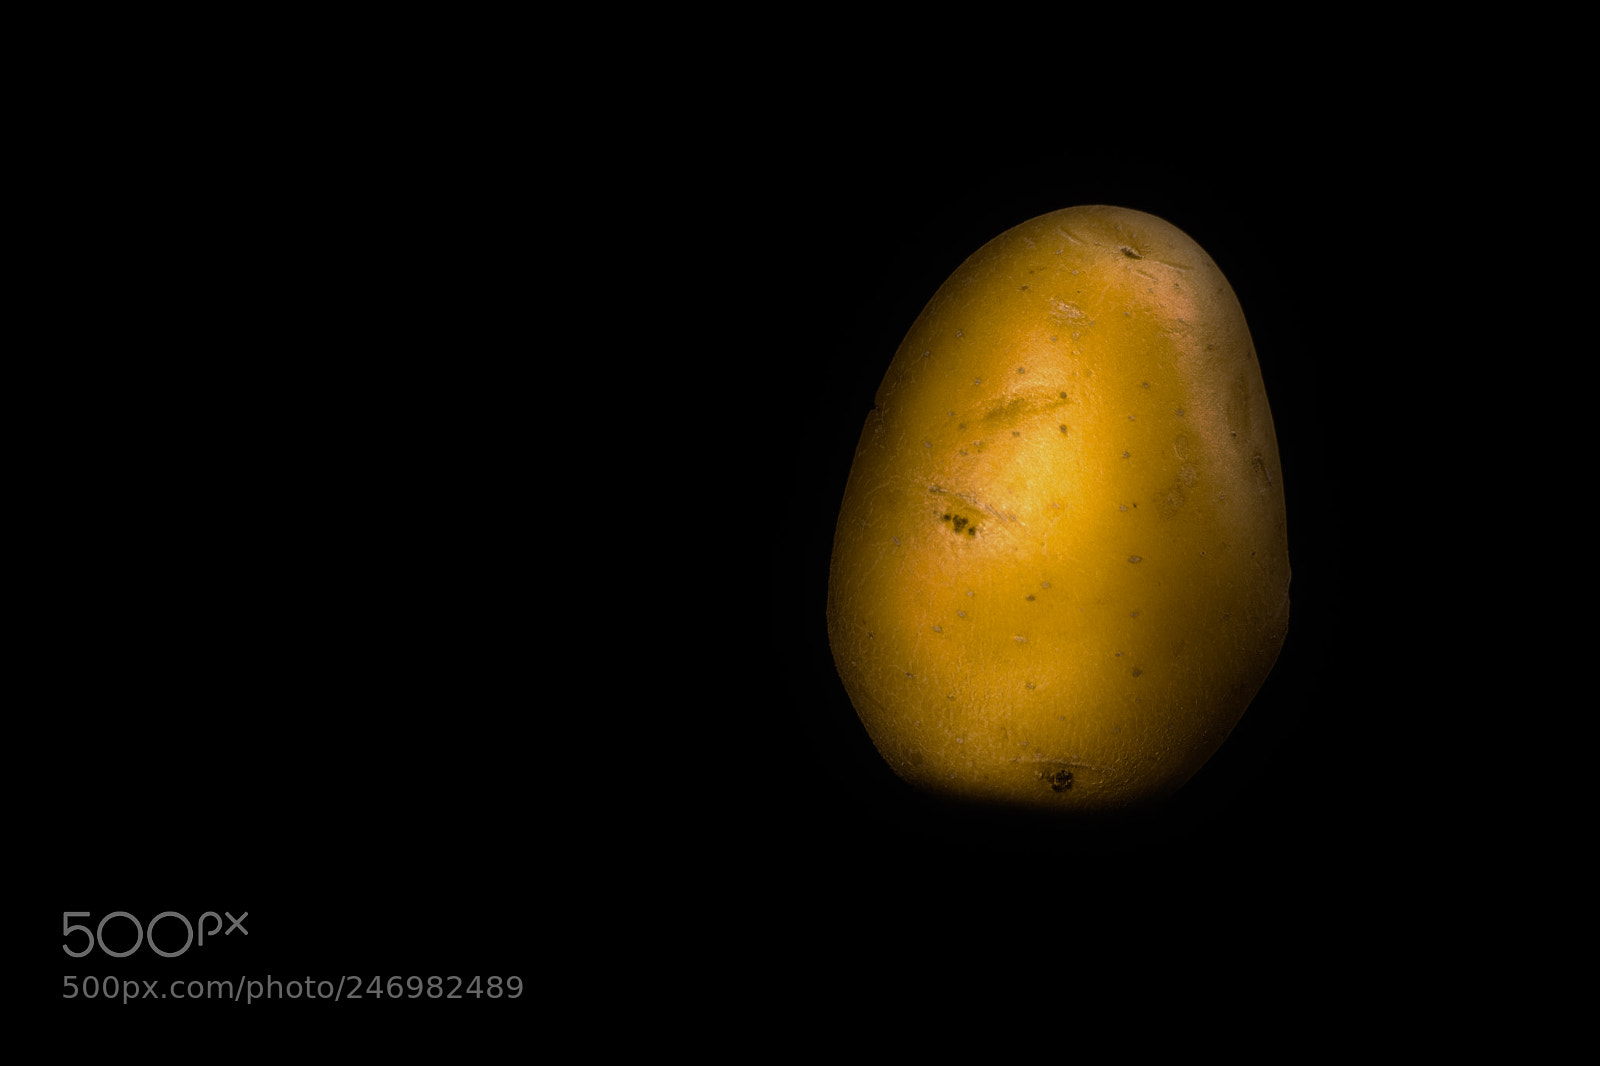 Nikon D7200 sample photo. Ritratto di patata gialla photography